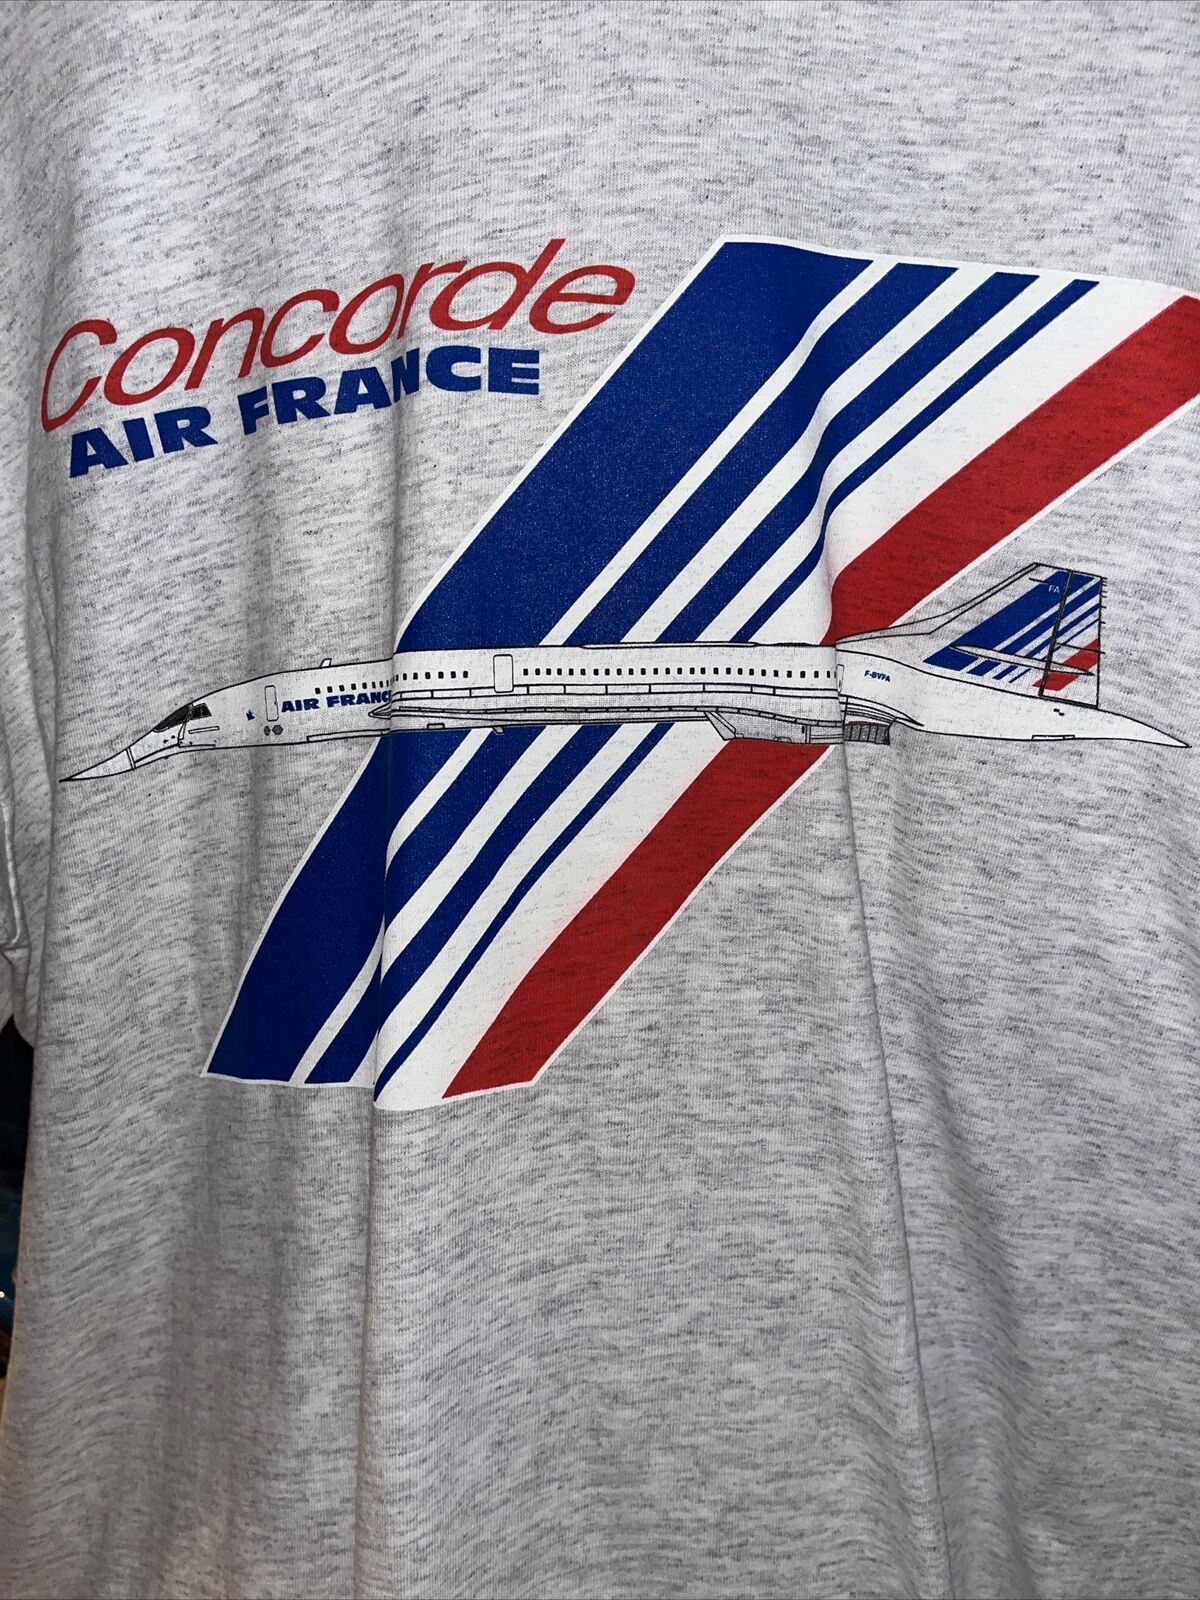 Concorde Air France T Shirt